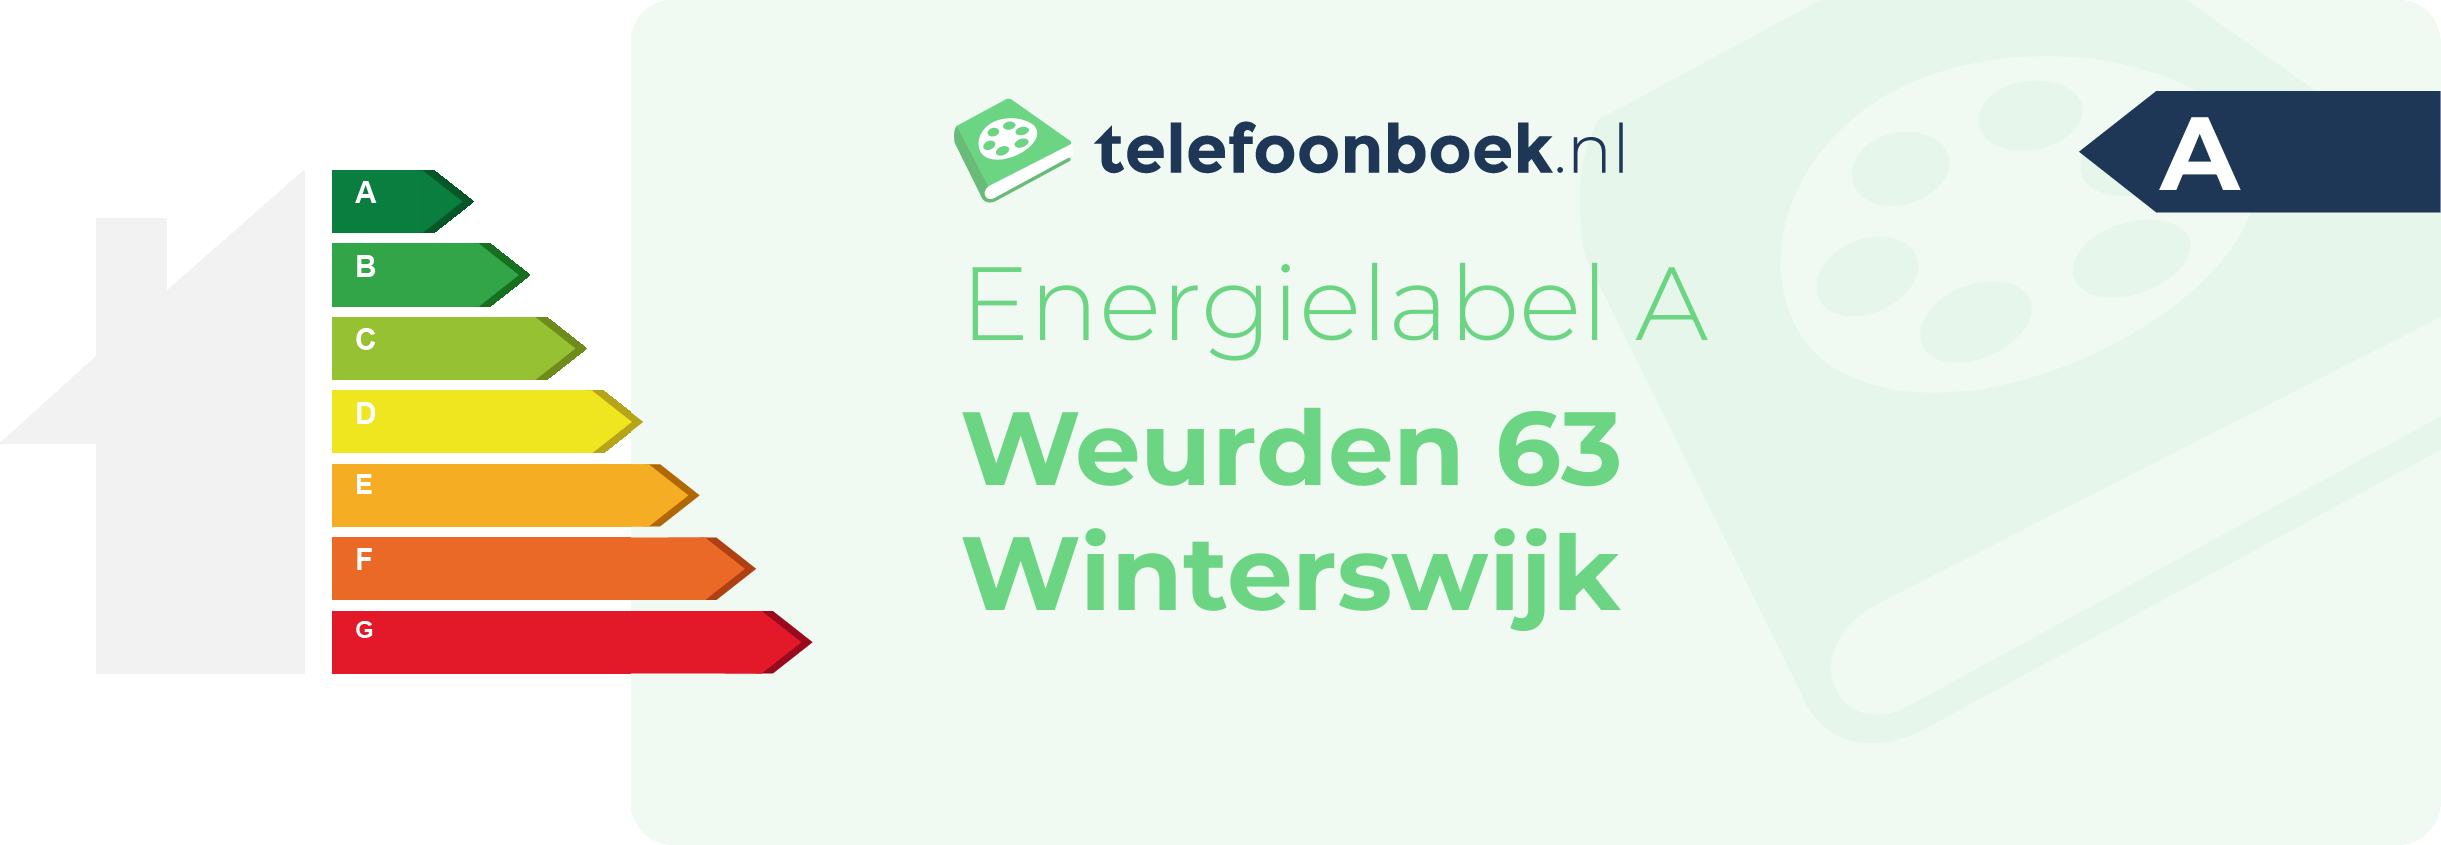 Energielabel Weurden 63 Winterswijk